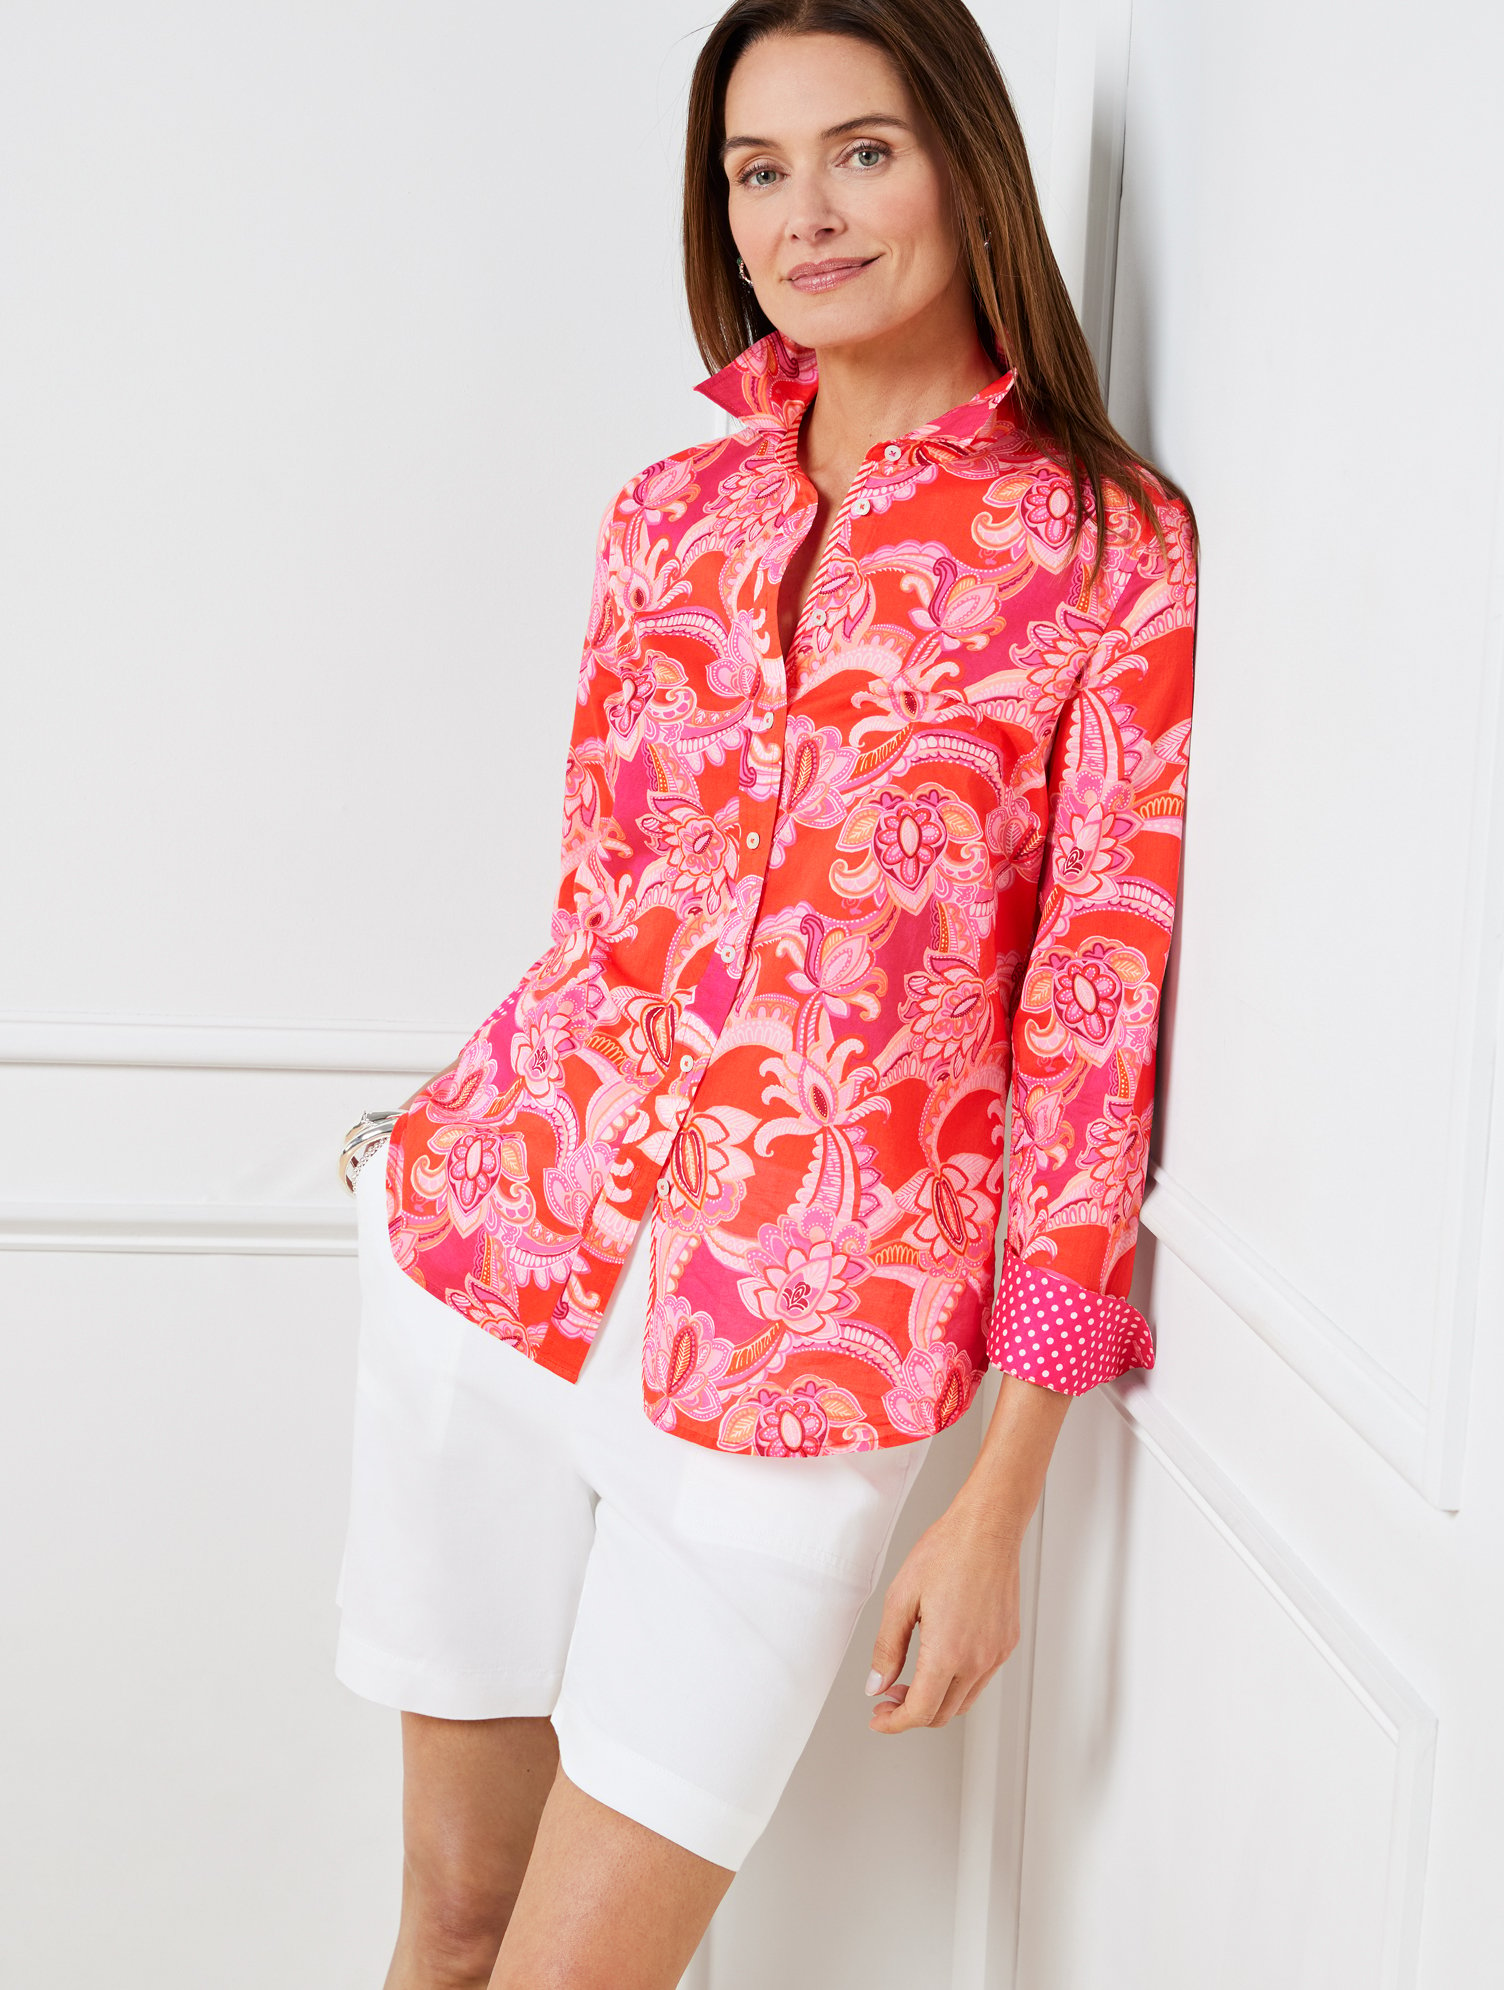 Talbots Cotton Button Front Shirt - Charming Floral - Orange/pink Geranium - 2x  In Orange,pink Geranium